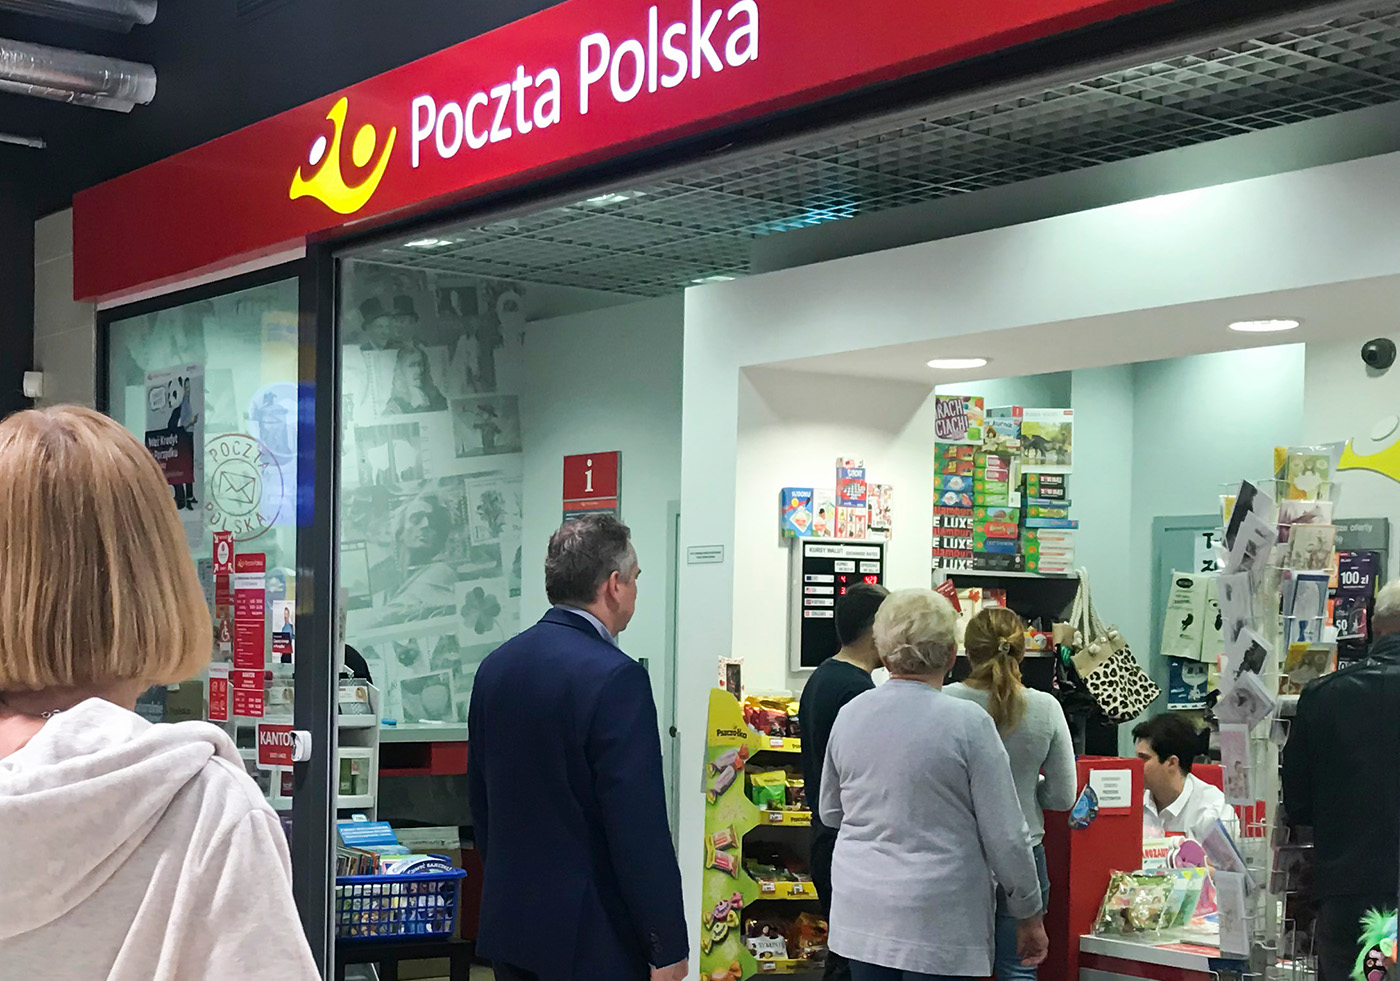 Poczta Polska to bardziej jarmarczny stragan niż firma logistyczna